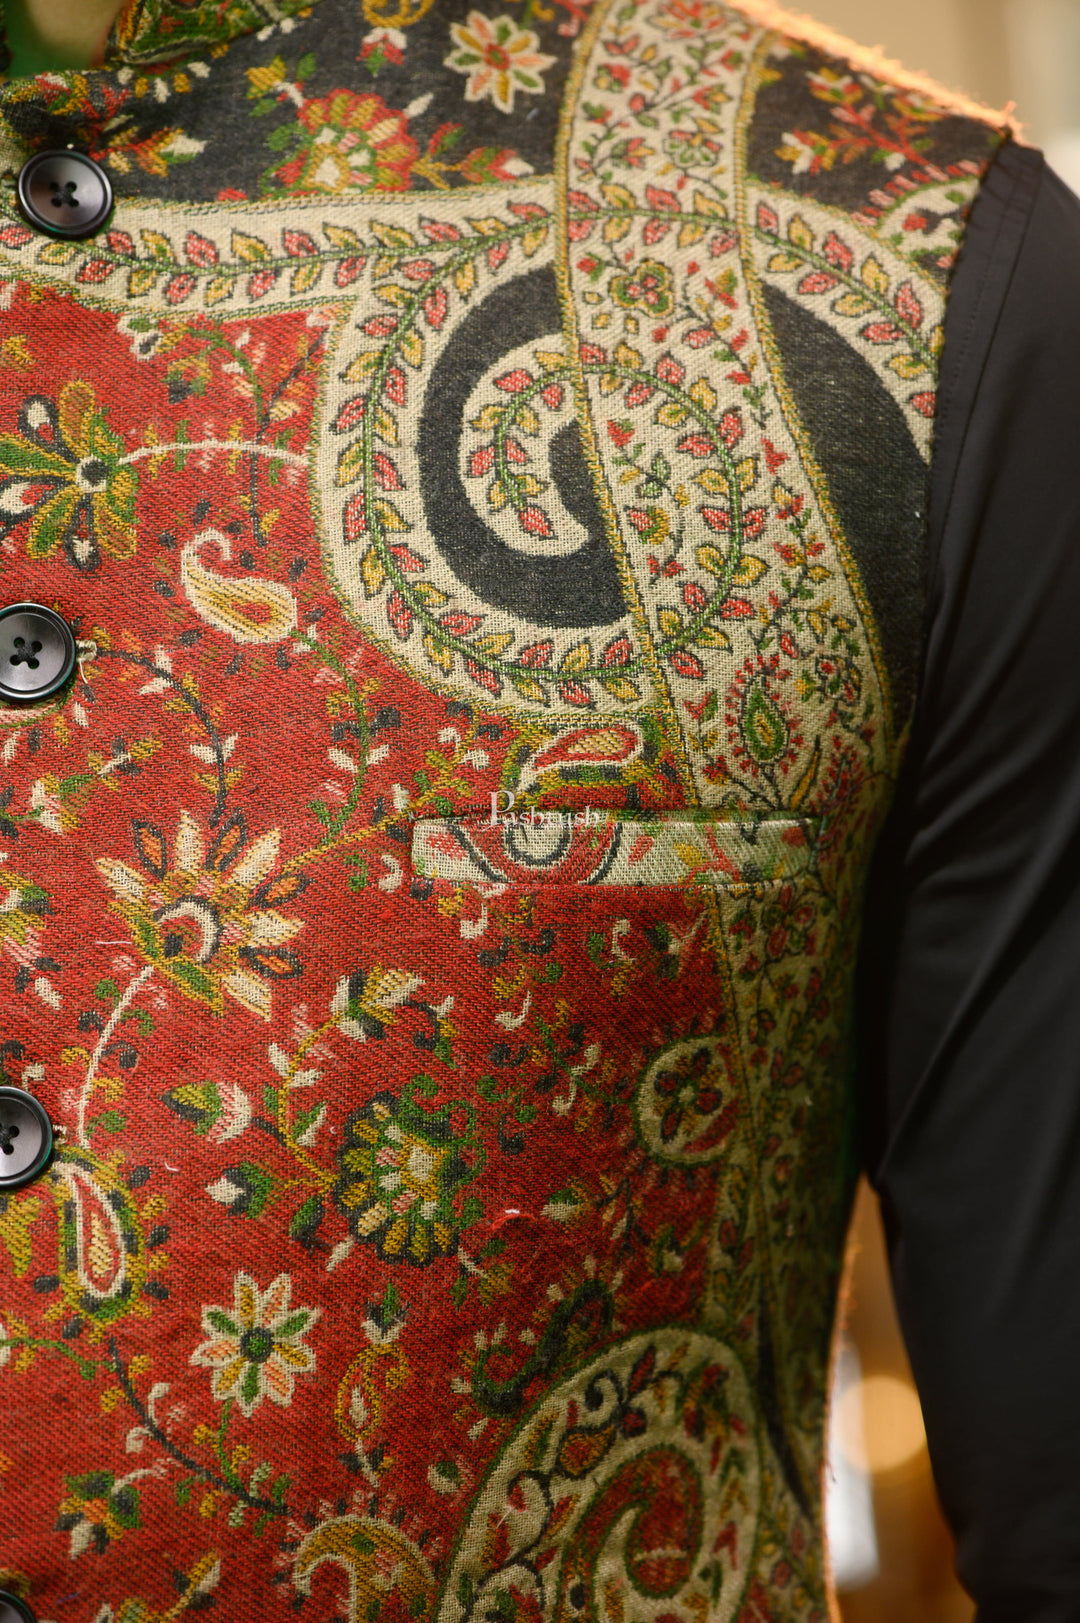 Pashtush India Coats & Jackets Pashtush Mens Faux Pashmina Jacket, Antique Design, Multicolour